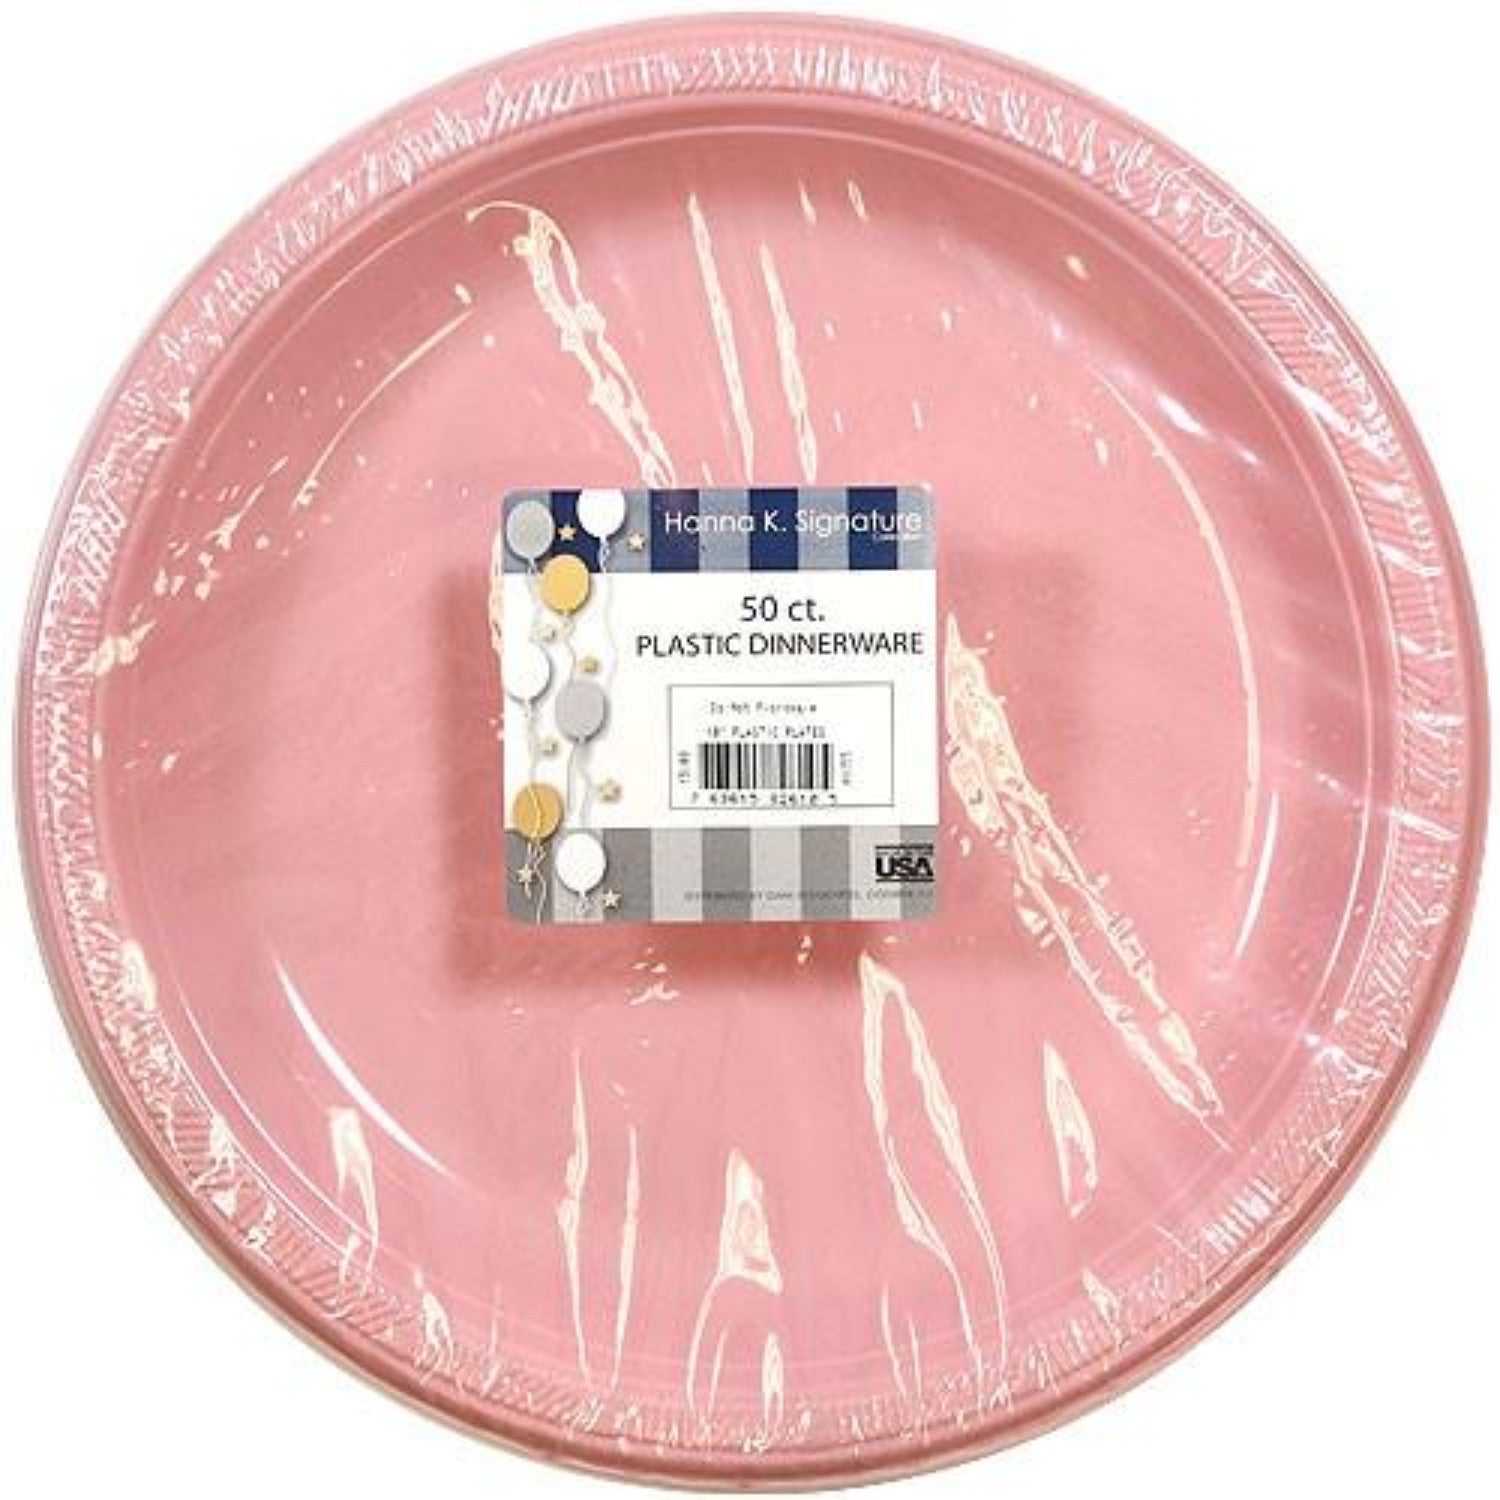 Hanna K. Signature Plastic Plates Pink 10" Plastic Plates Hanna K   